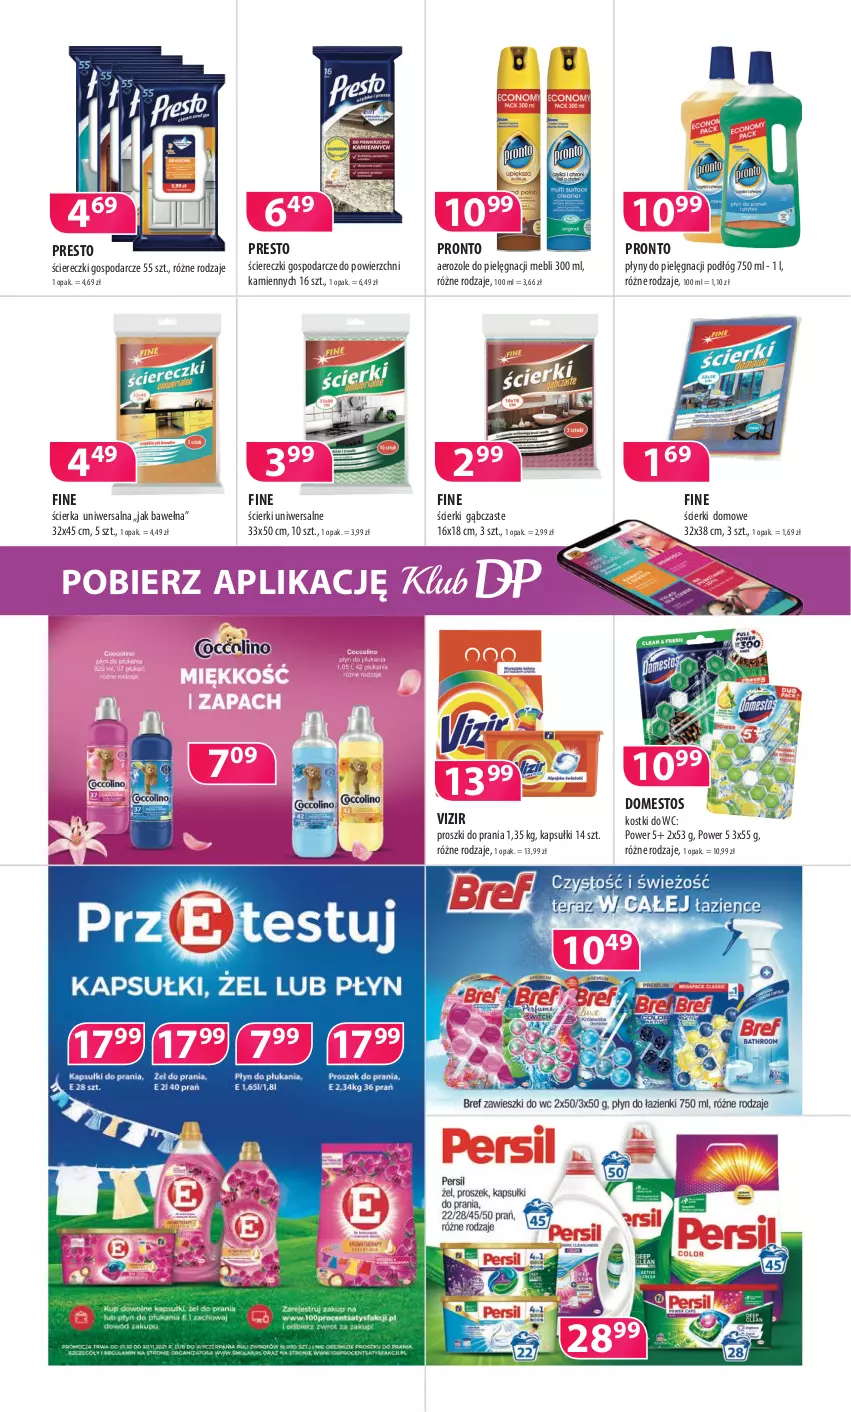 Gazetka promocyjna Drogerie Polskie - Gazetka - ważna 12.11 do 30.11.2021 - strona 8 - produkty: Domestos, Presto, Pronto, Vizir, Wełna